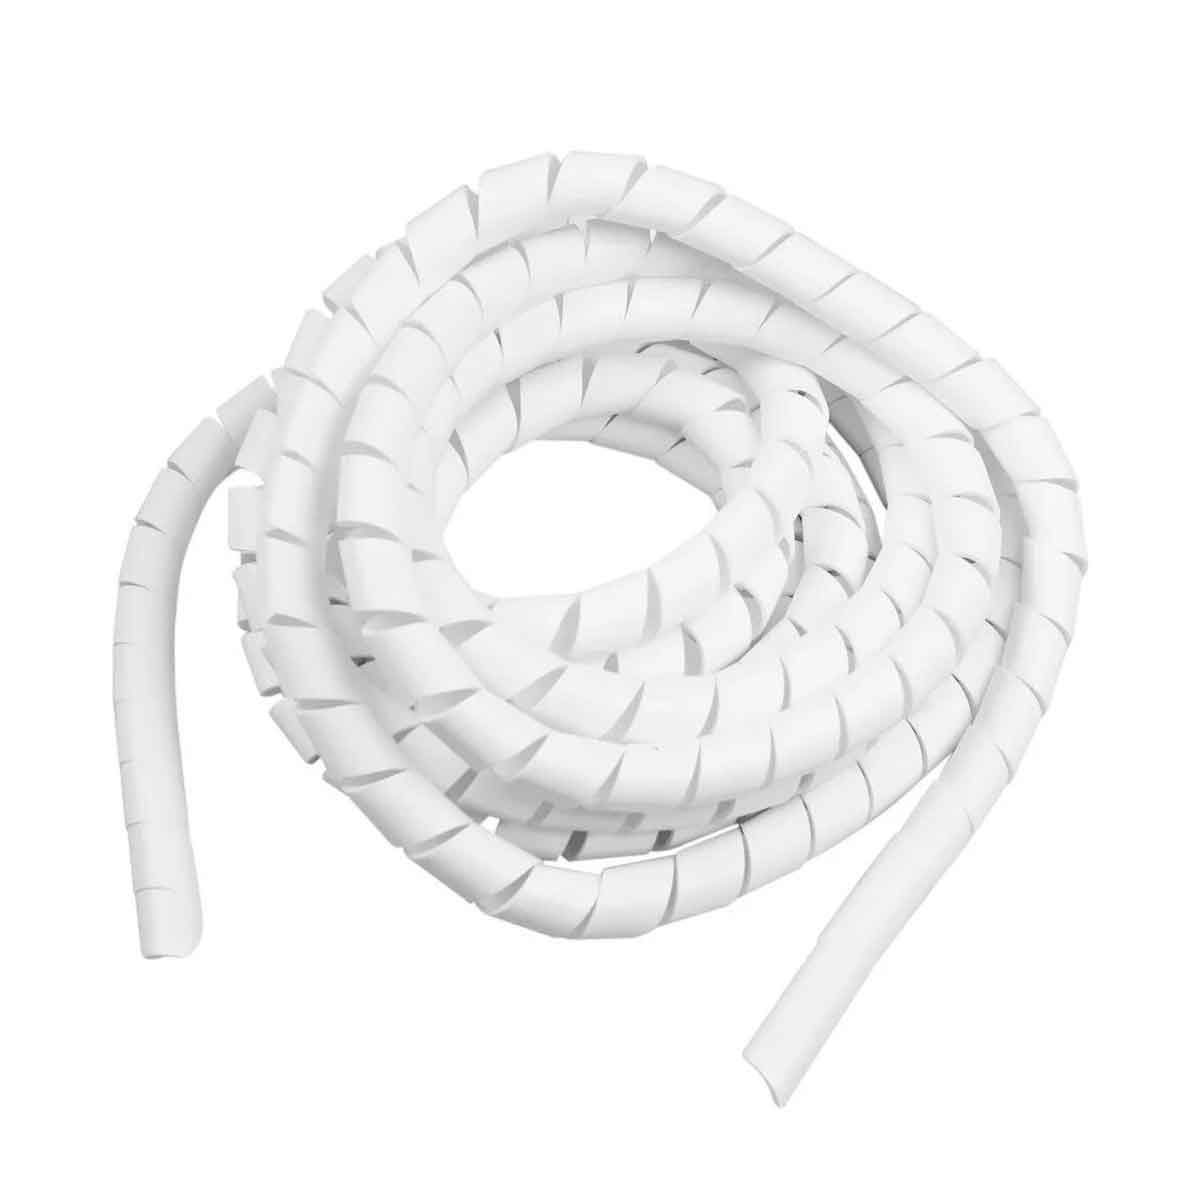 Organizador Espiral Para Cables Techtools Blanco 10 Mts 3/4 Hogar